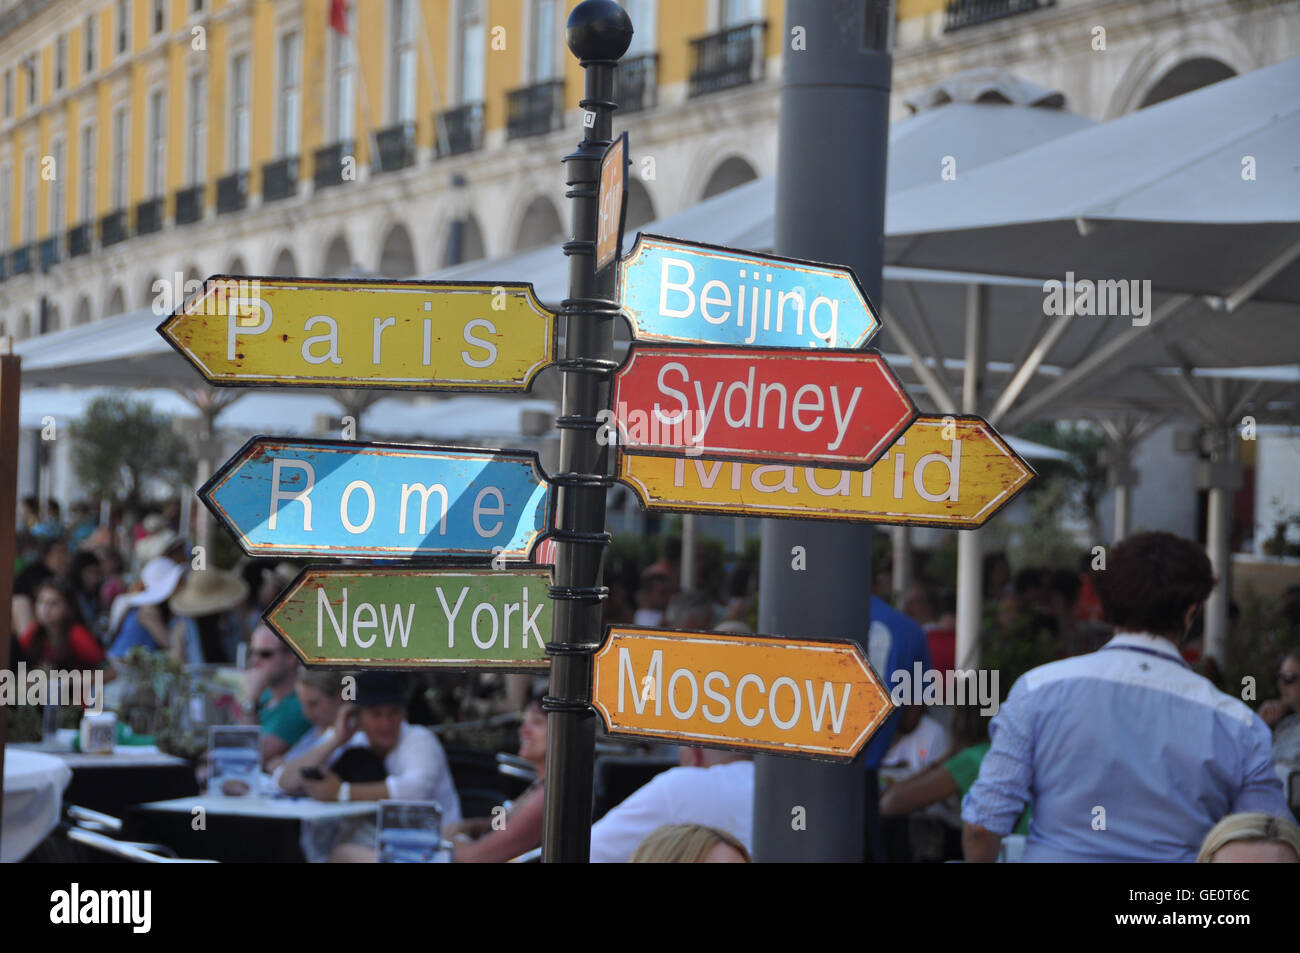 Rusty segno indicante le direzioni a Pechino, Sydney, Madrid, Parigi, Roma, New York e Mosca, da Lisbona, Portogallo Foto Stock